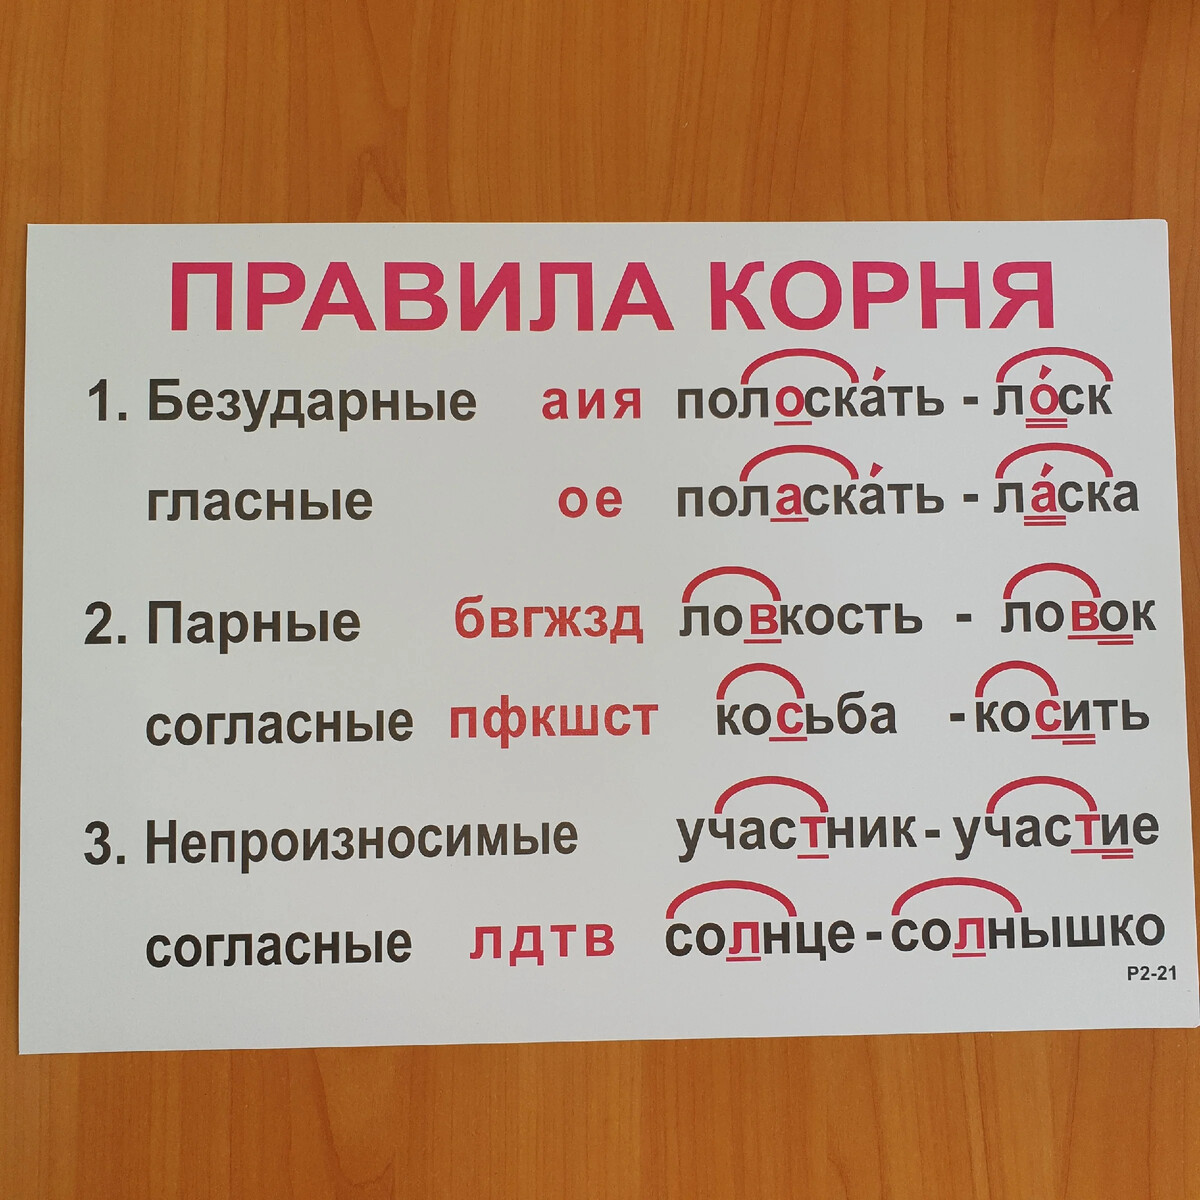 Правила с 2 корнями. Корни правила. Что такое корень в русском языке правило. Корень правило.